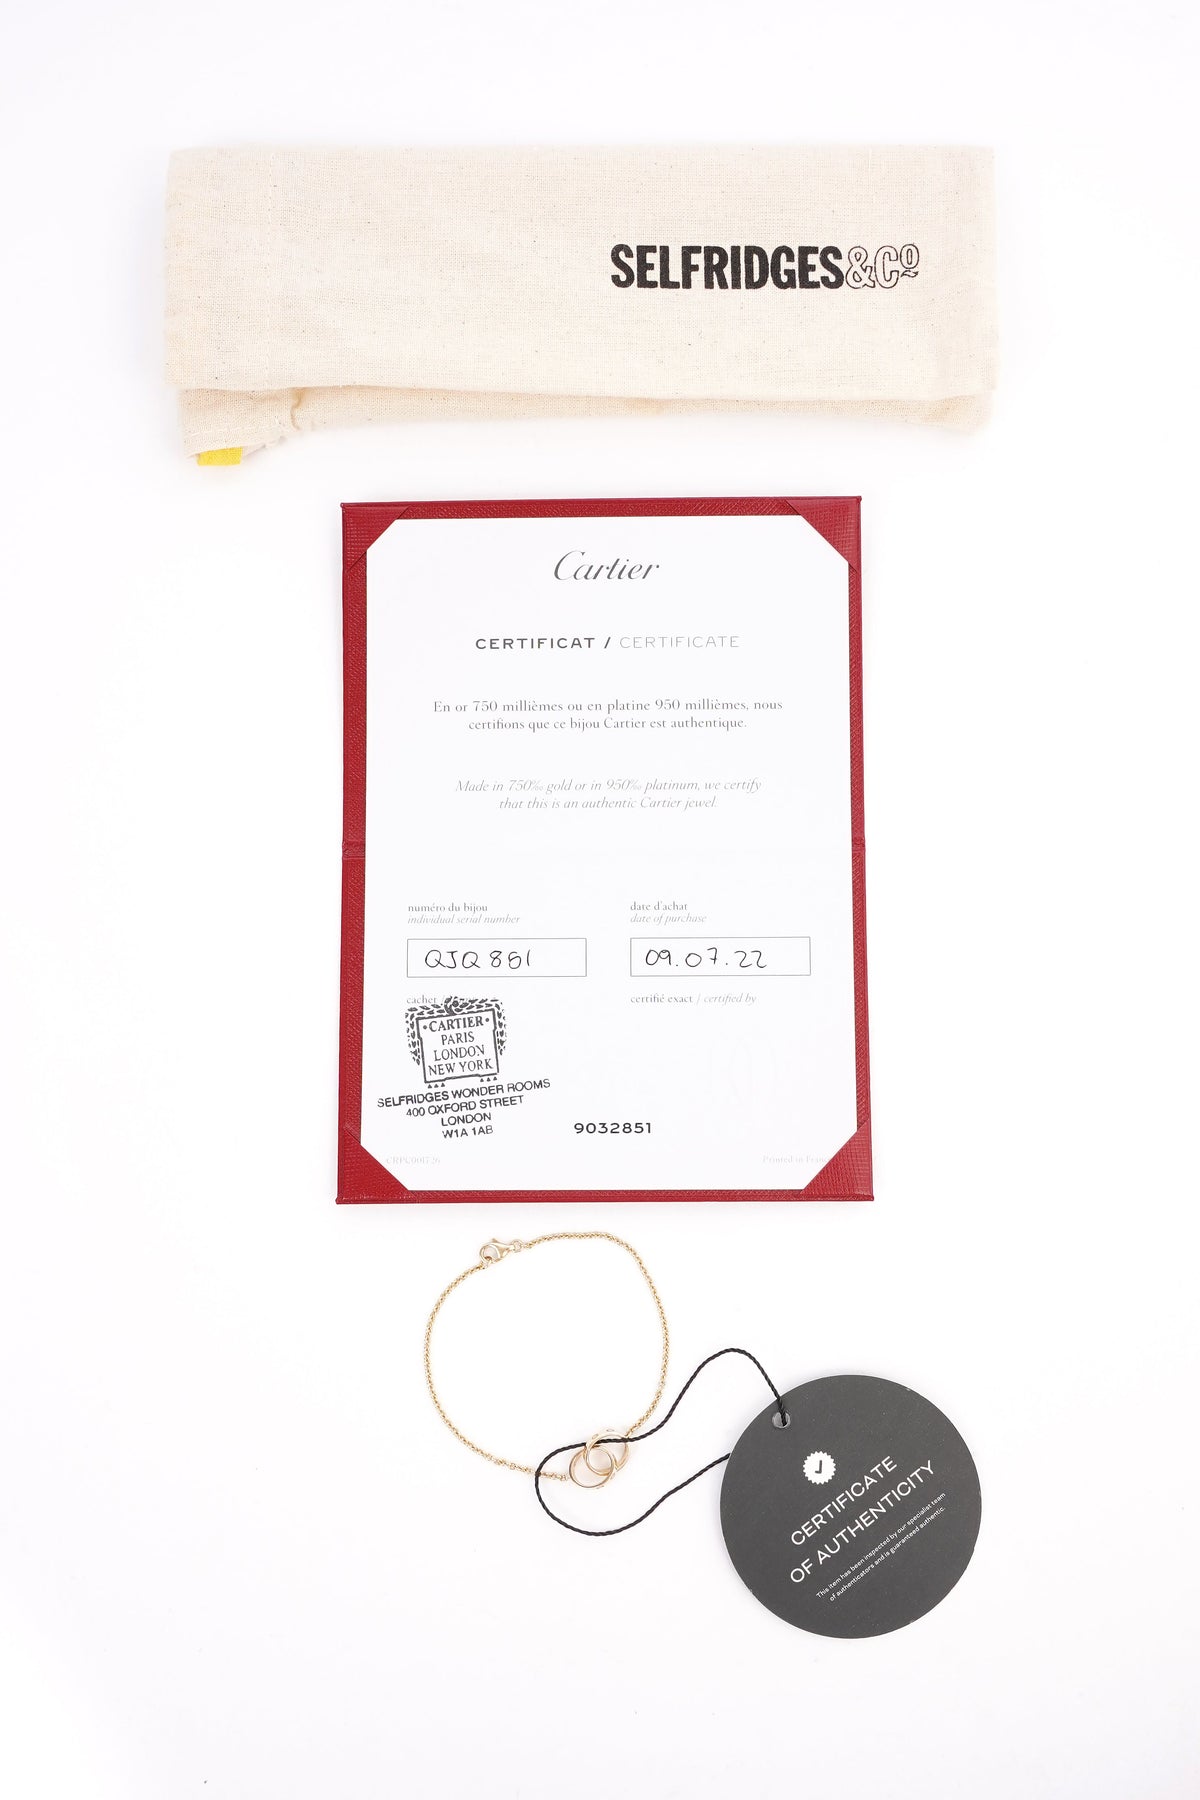 Shop Louis Vuitton Nanogram strass bracelet (M64860) by SolidConnection